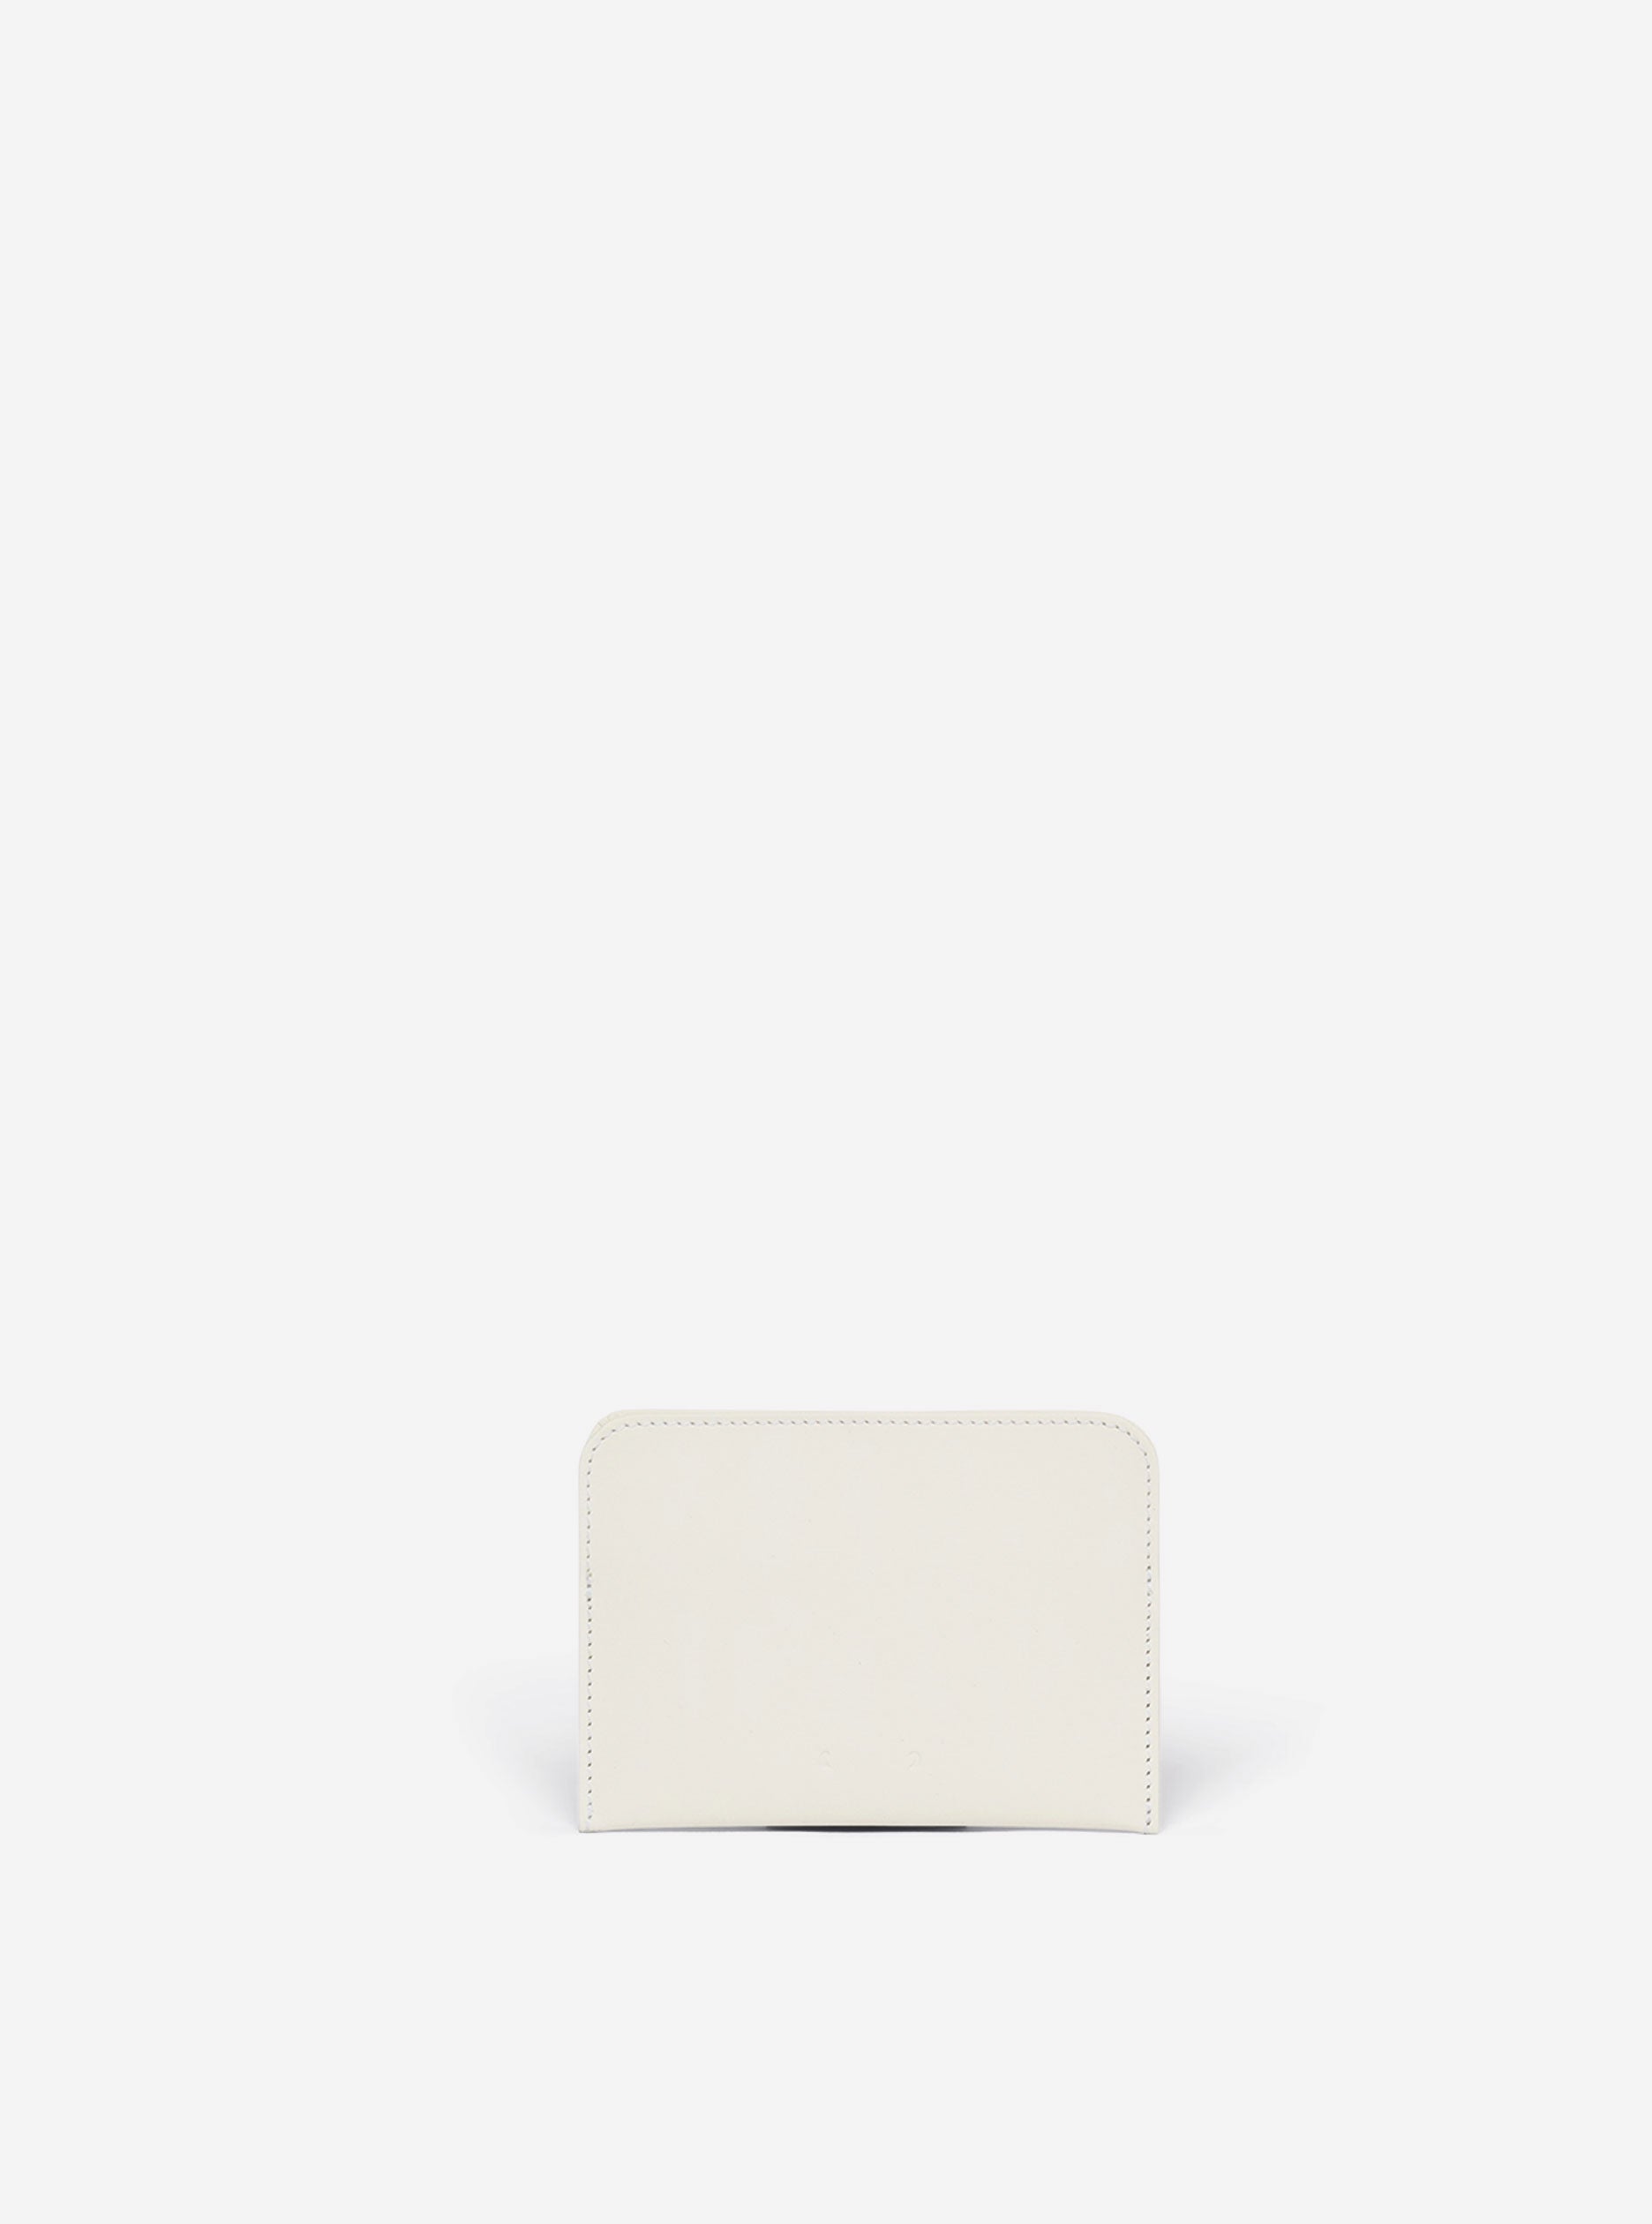 CM 51 in white card case - PB0110 – PB 0110